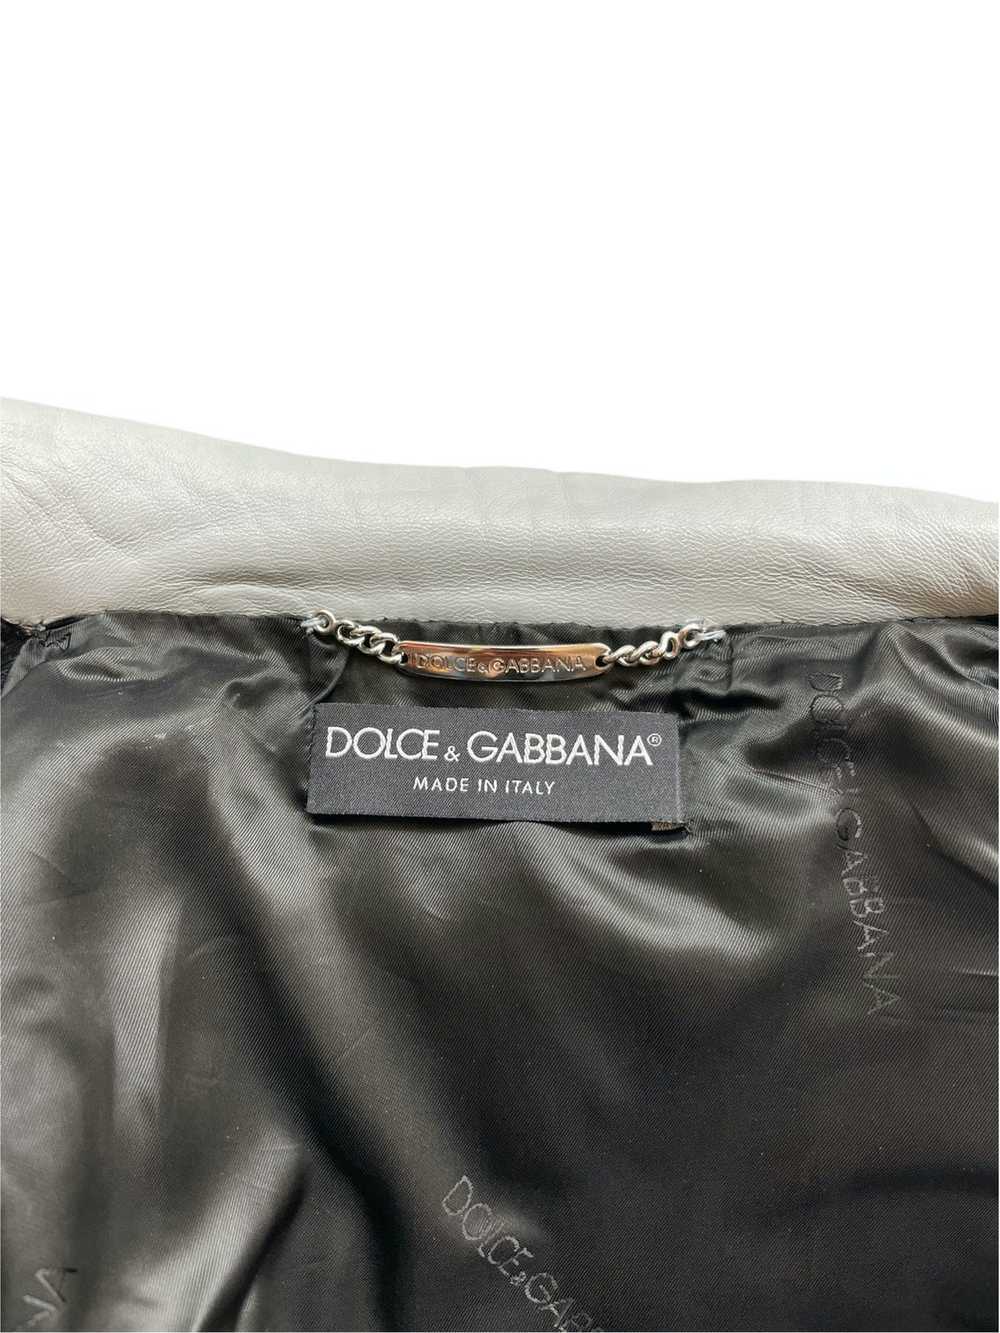 Dolce & Gabbana Dolce Gabbana SS2003 runway leath… - image 6